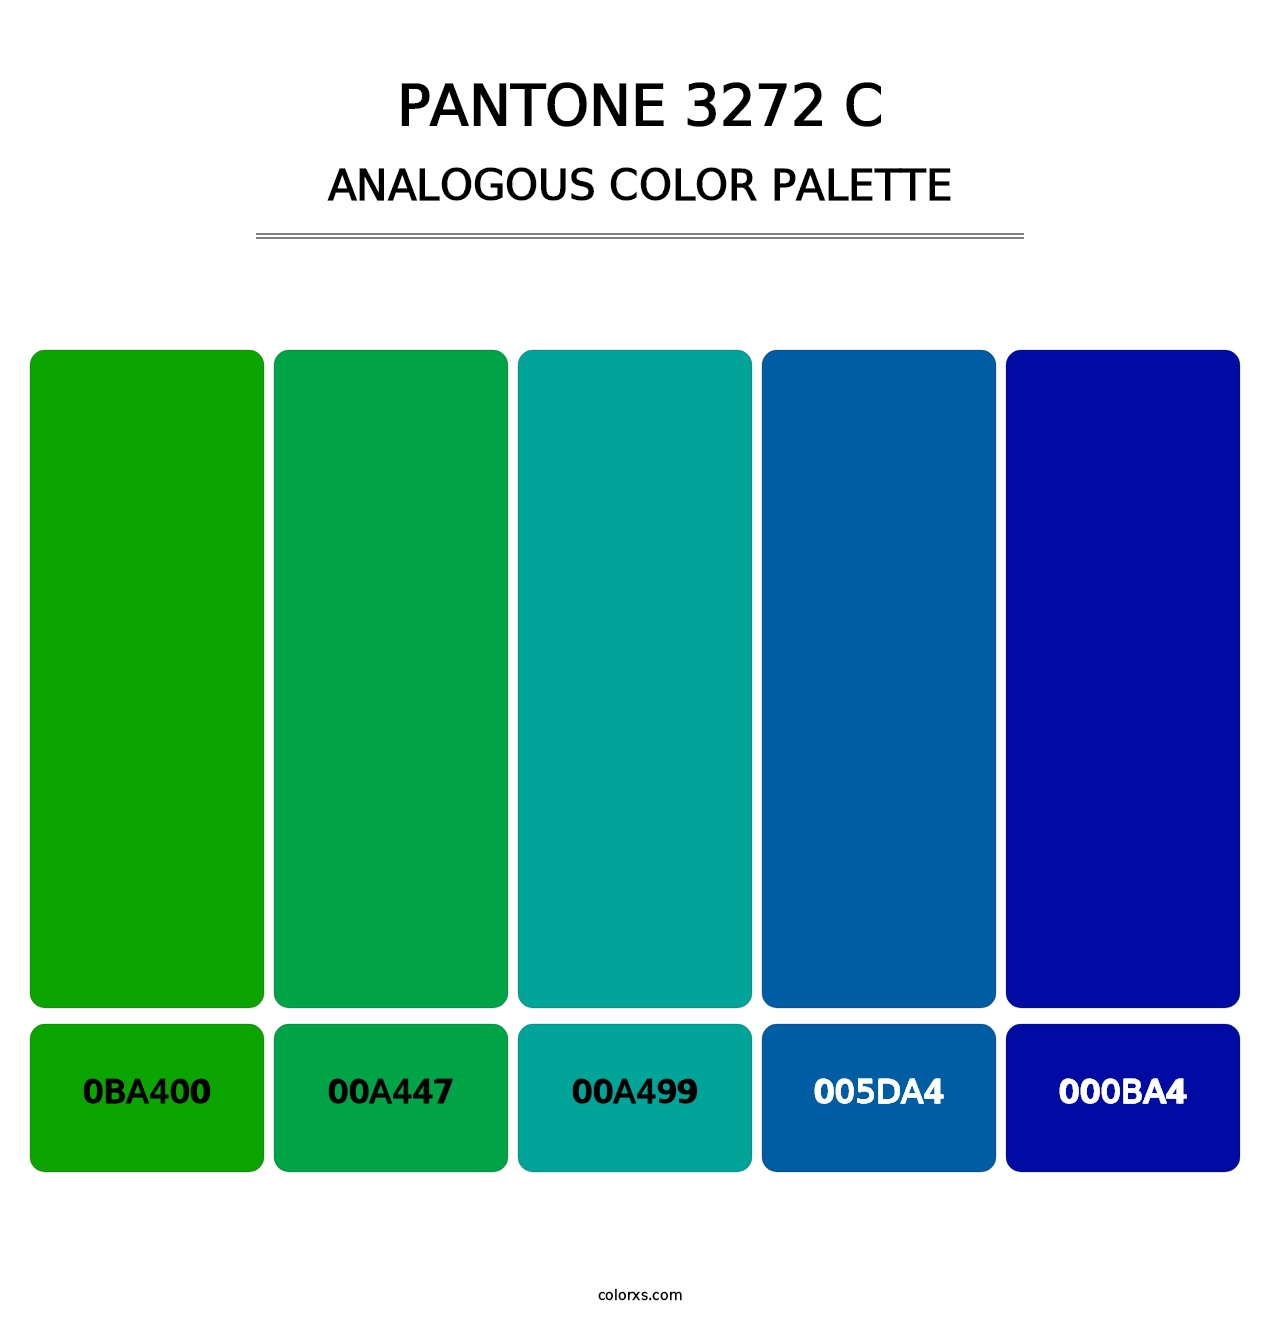 PANTONE 3272 C - Analogous Color Palette